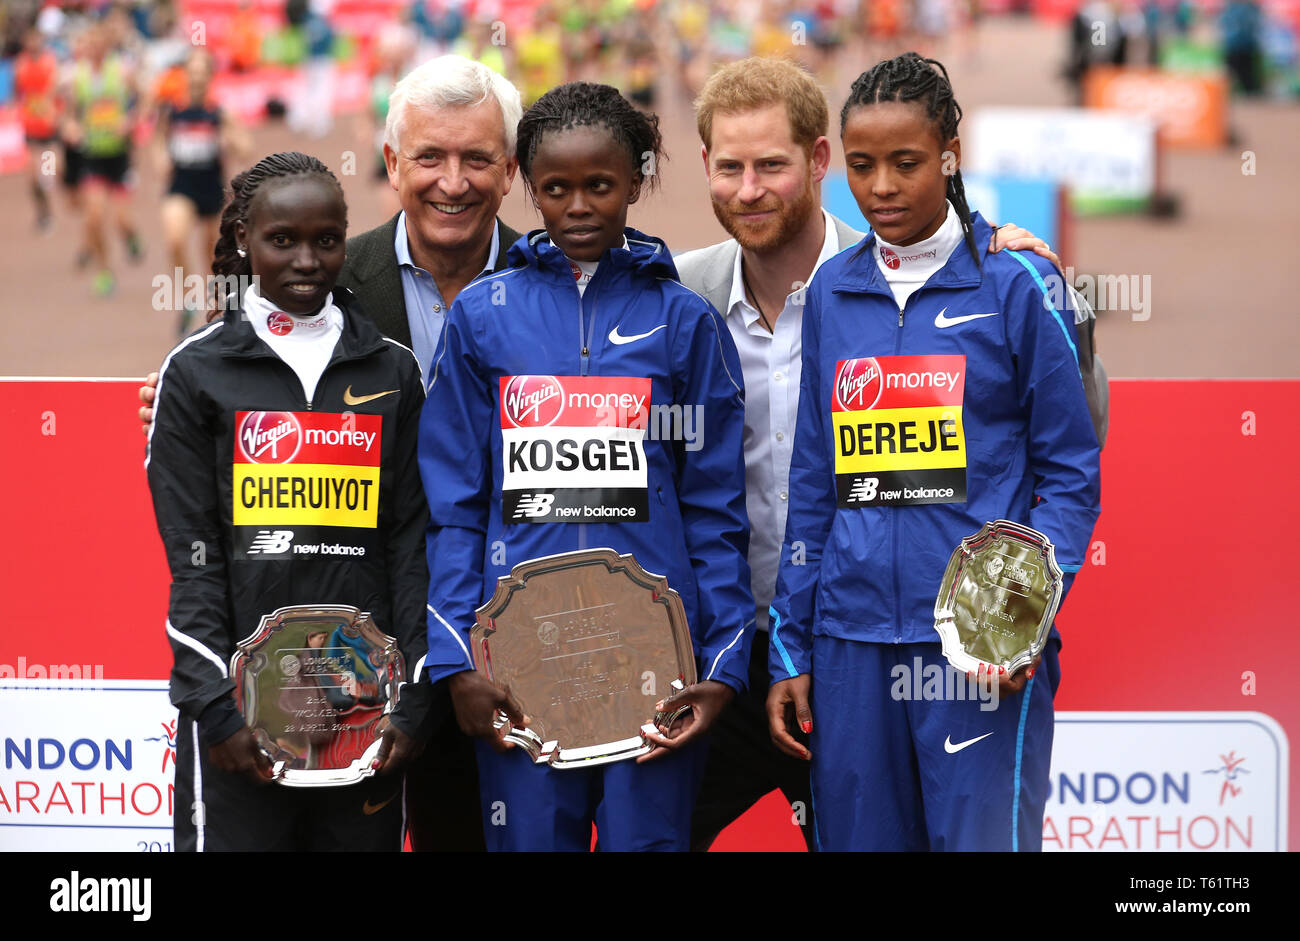 Le duc de Sussex pose pour une photo avec le Kenya's Brigid Kosgei (centre) après avoir reçu le trophée pour avoir remporté le marathon de Londres aux côtés des femmes du Kenya placé deuxième Vivian Cheruiyot (à droite) et l'Éthiopie placé troisième Roza Dereje (à gauche) au cours de la Virgin Money 2019 Marathon de Londres. Banque D'Images